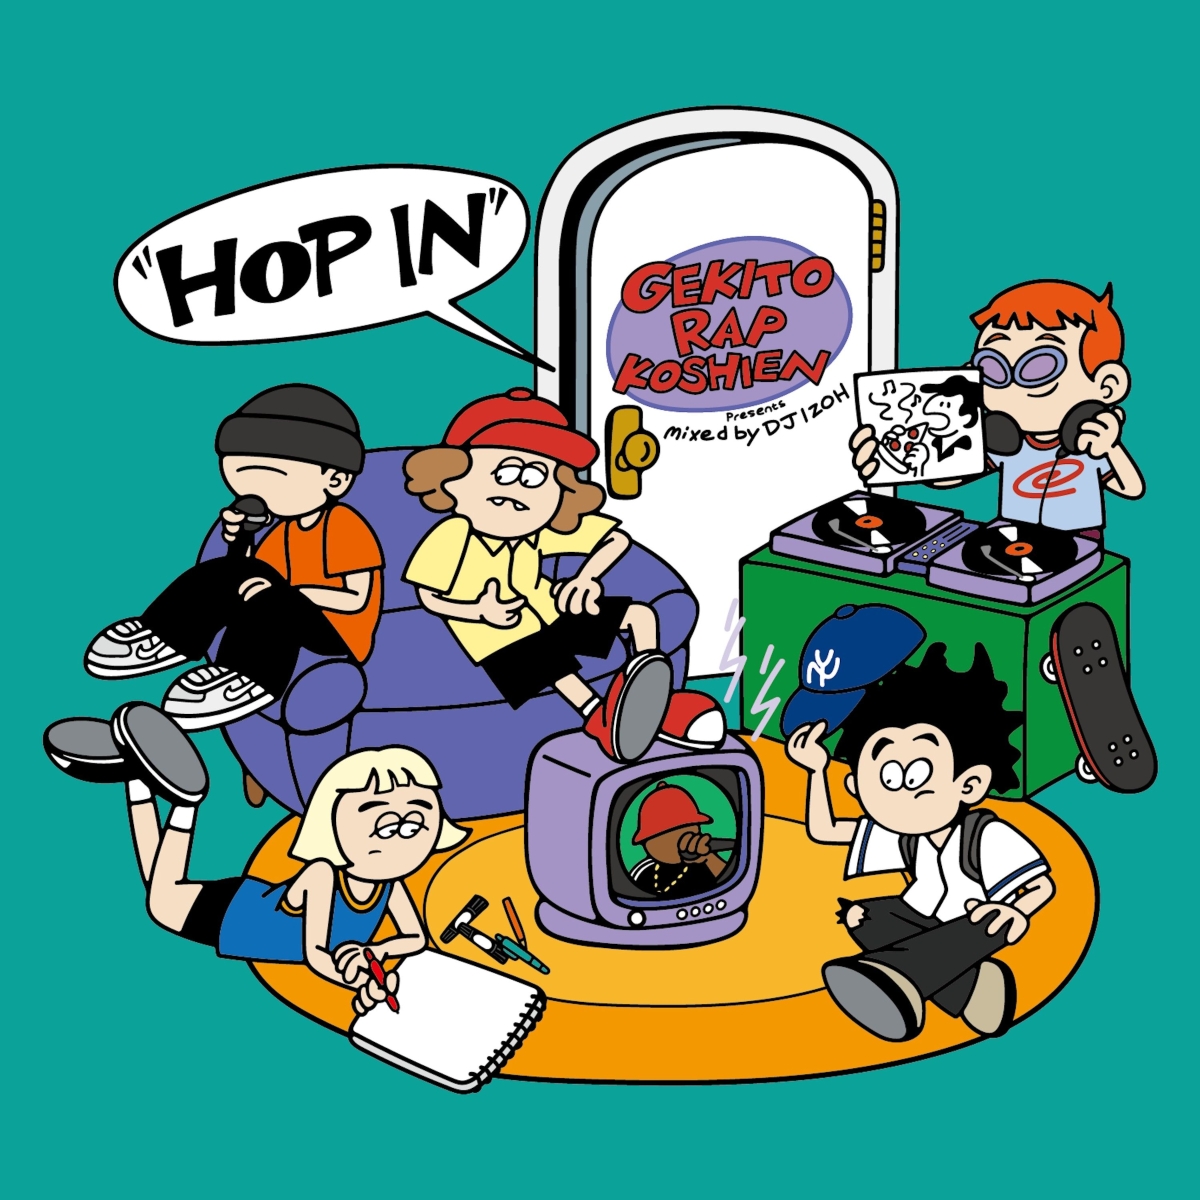 激闘!ラップ甲子園 presents ”HOP IN” mixed by DJ IZOH画像